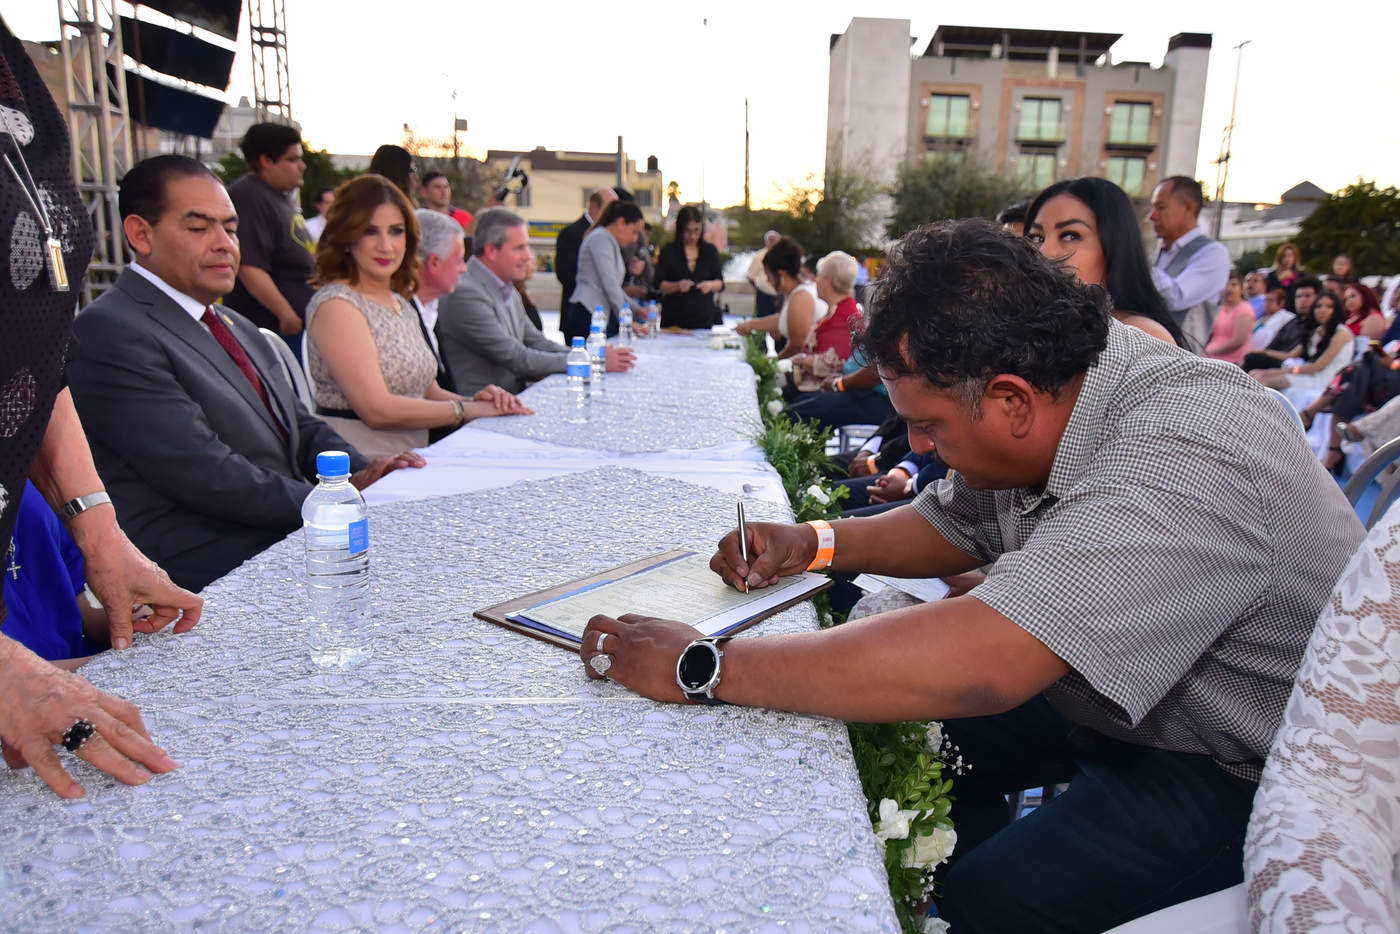 Bodas Comunitarias une a 250 parejas en Torreón